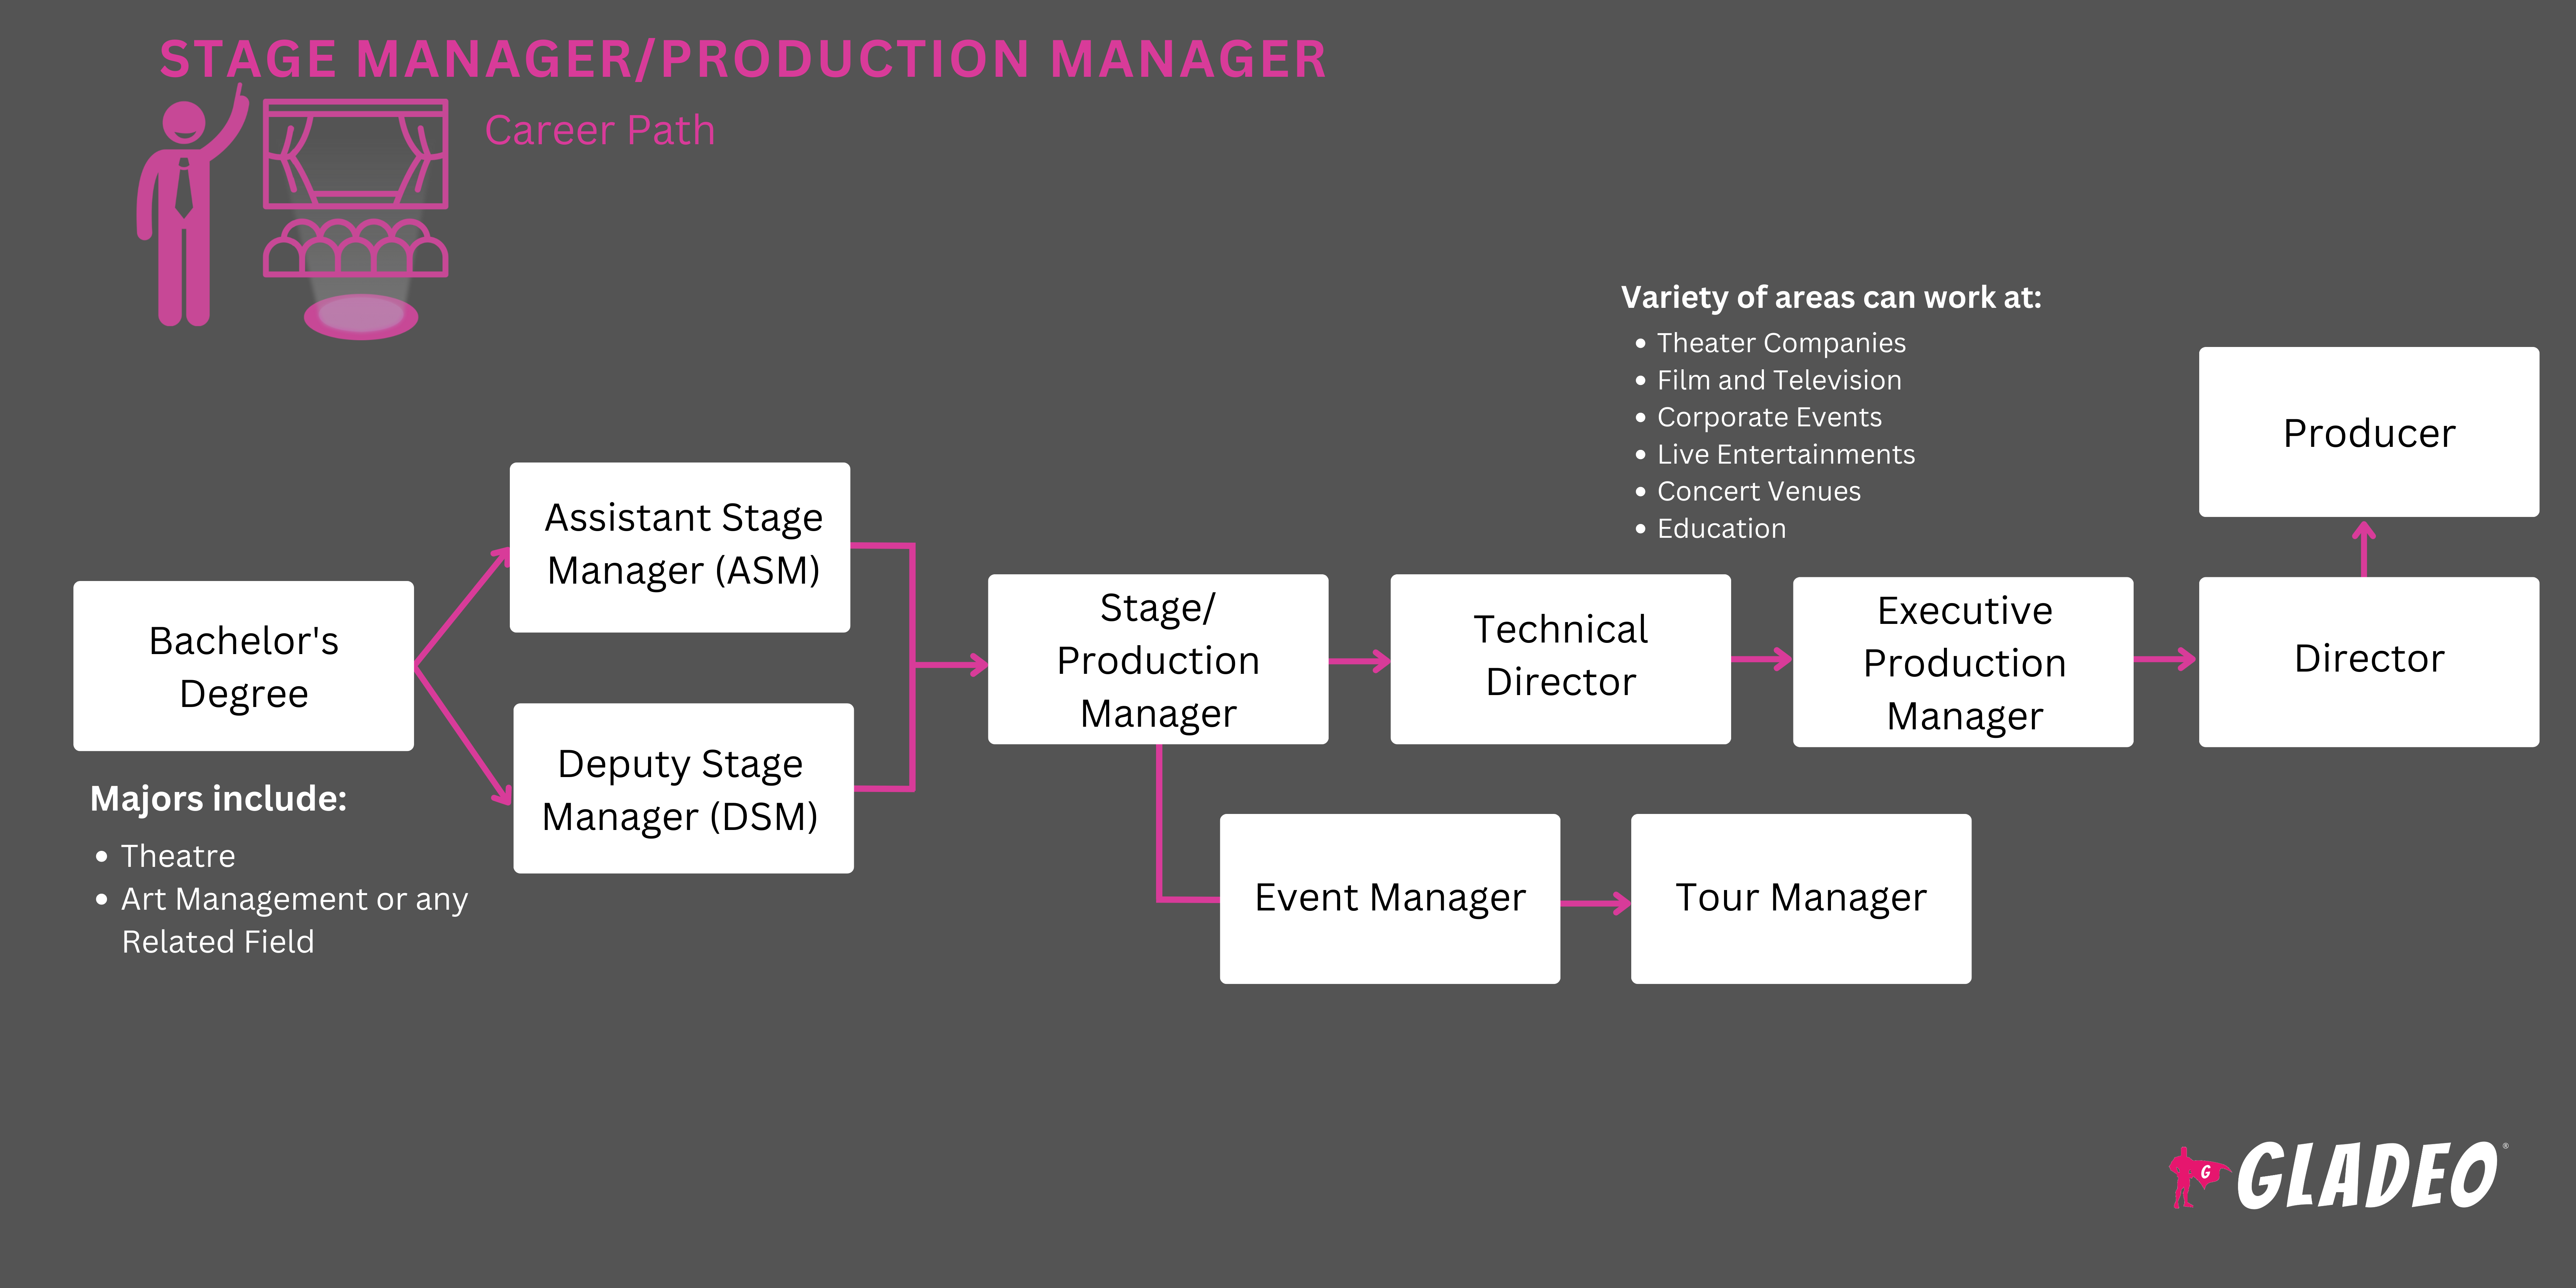 Jefe de producción/escenario